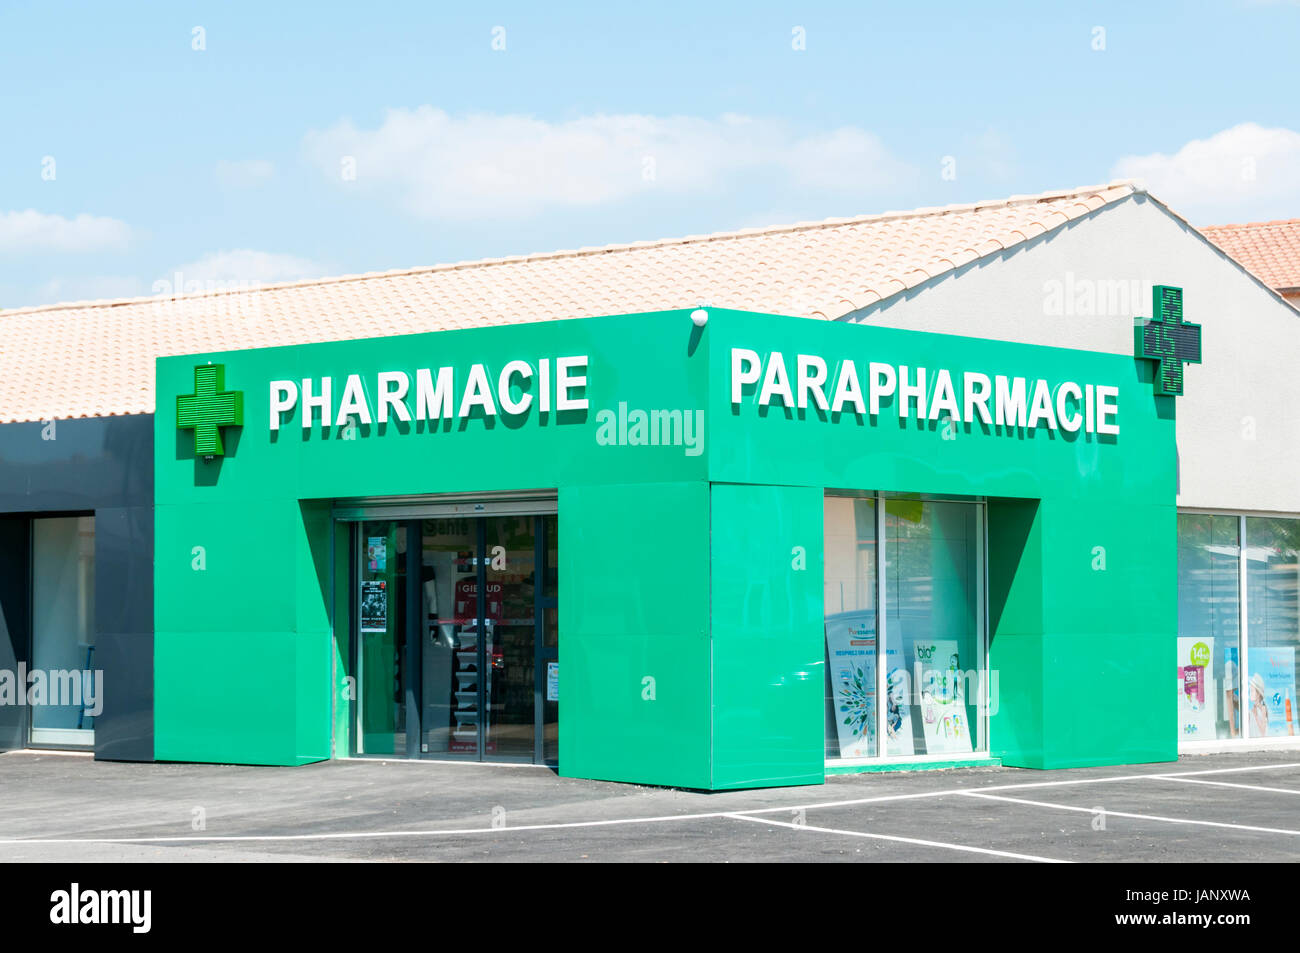 Un Francese Pharmacie e Parapharmacie. Una farmacia è lo stesso come un chimico o farmacia & un parapharmacie vende non gli elementi di prescrizione. Foto Stock